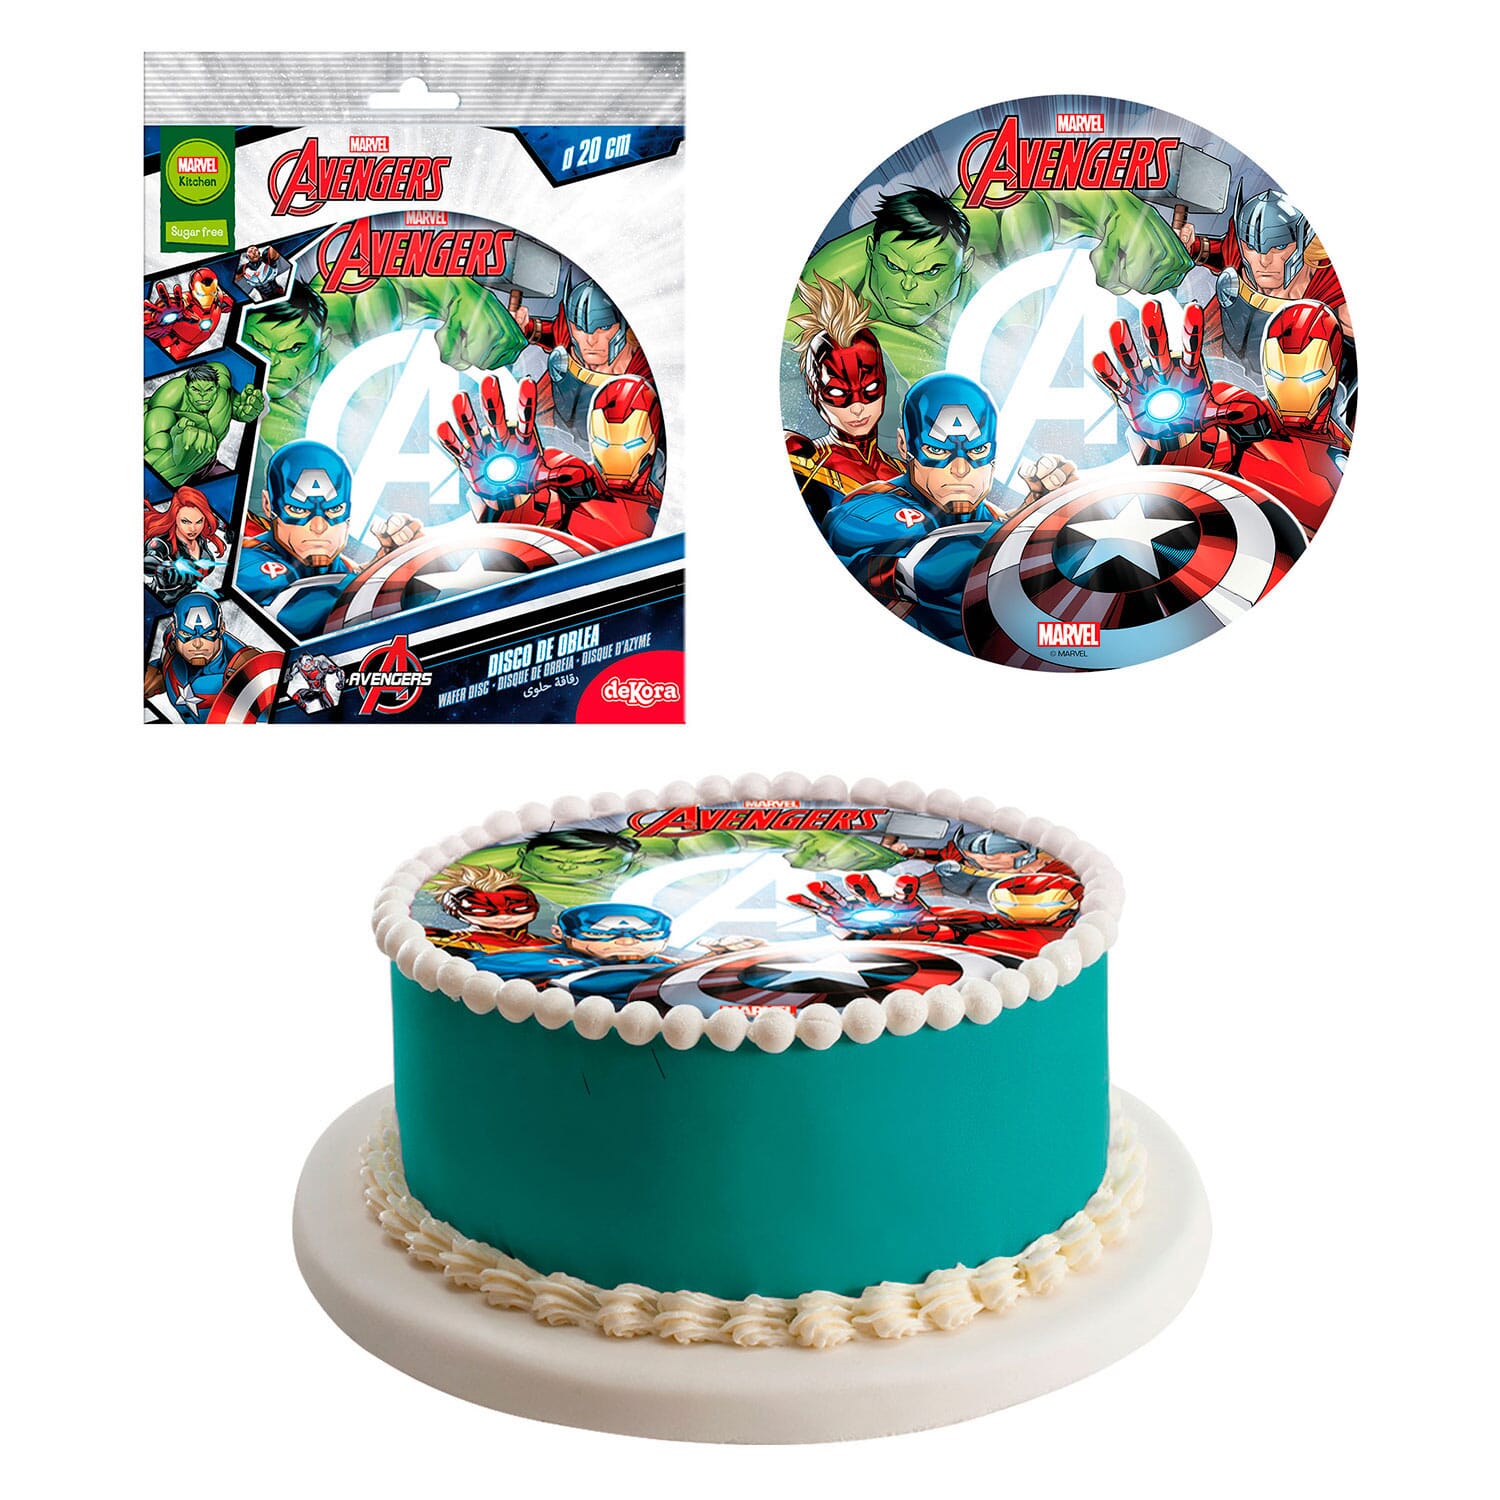 SUPERHERO CAKE TOPPER- AVENGERS CAKE TOPPER | Superhero cake toppers, Avengers  cake topper, Avenger cake